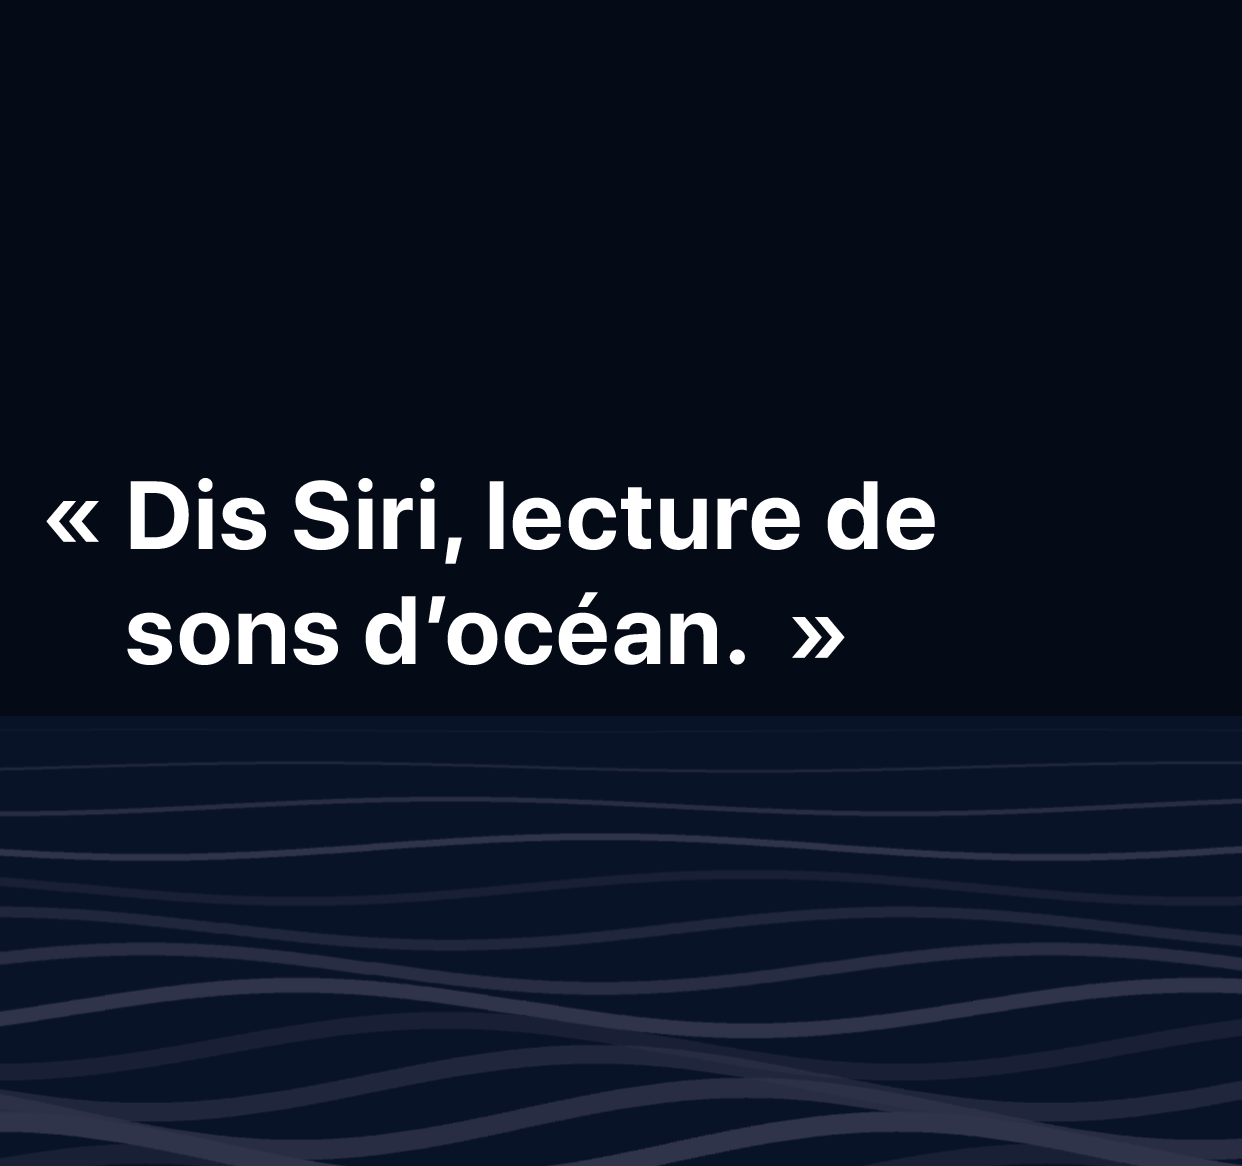 Une illustration des mots : “Dis Siri, lecture de sons d’océan”.